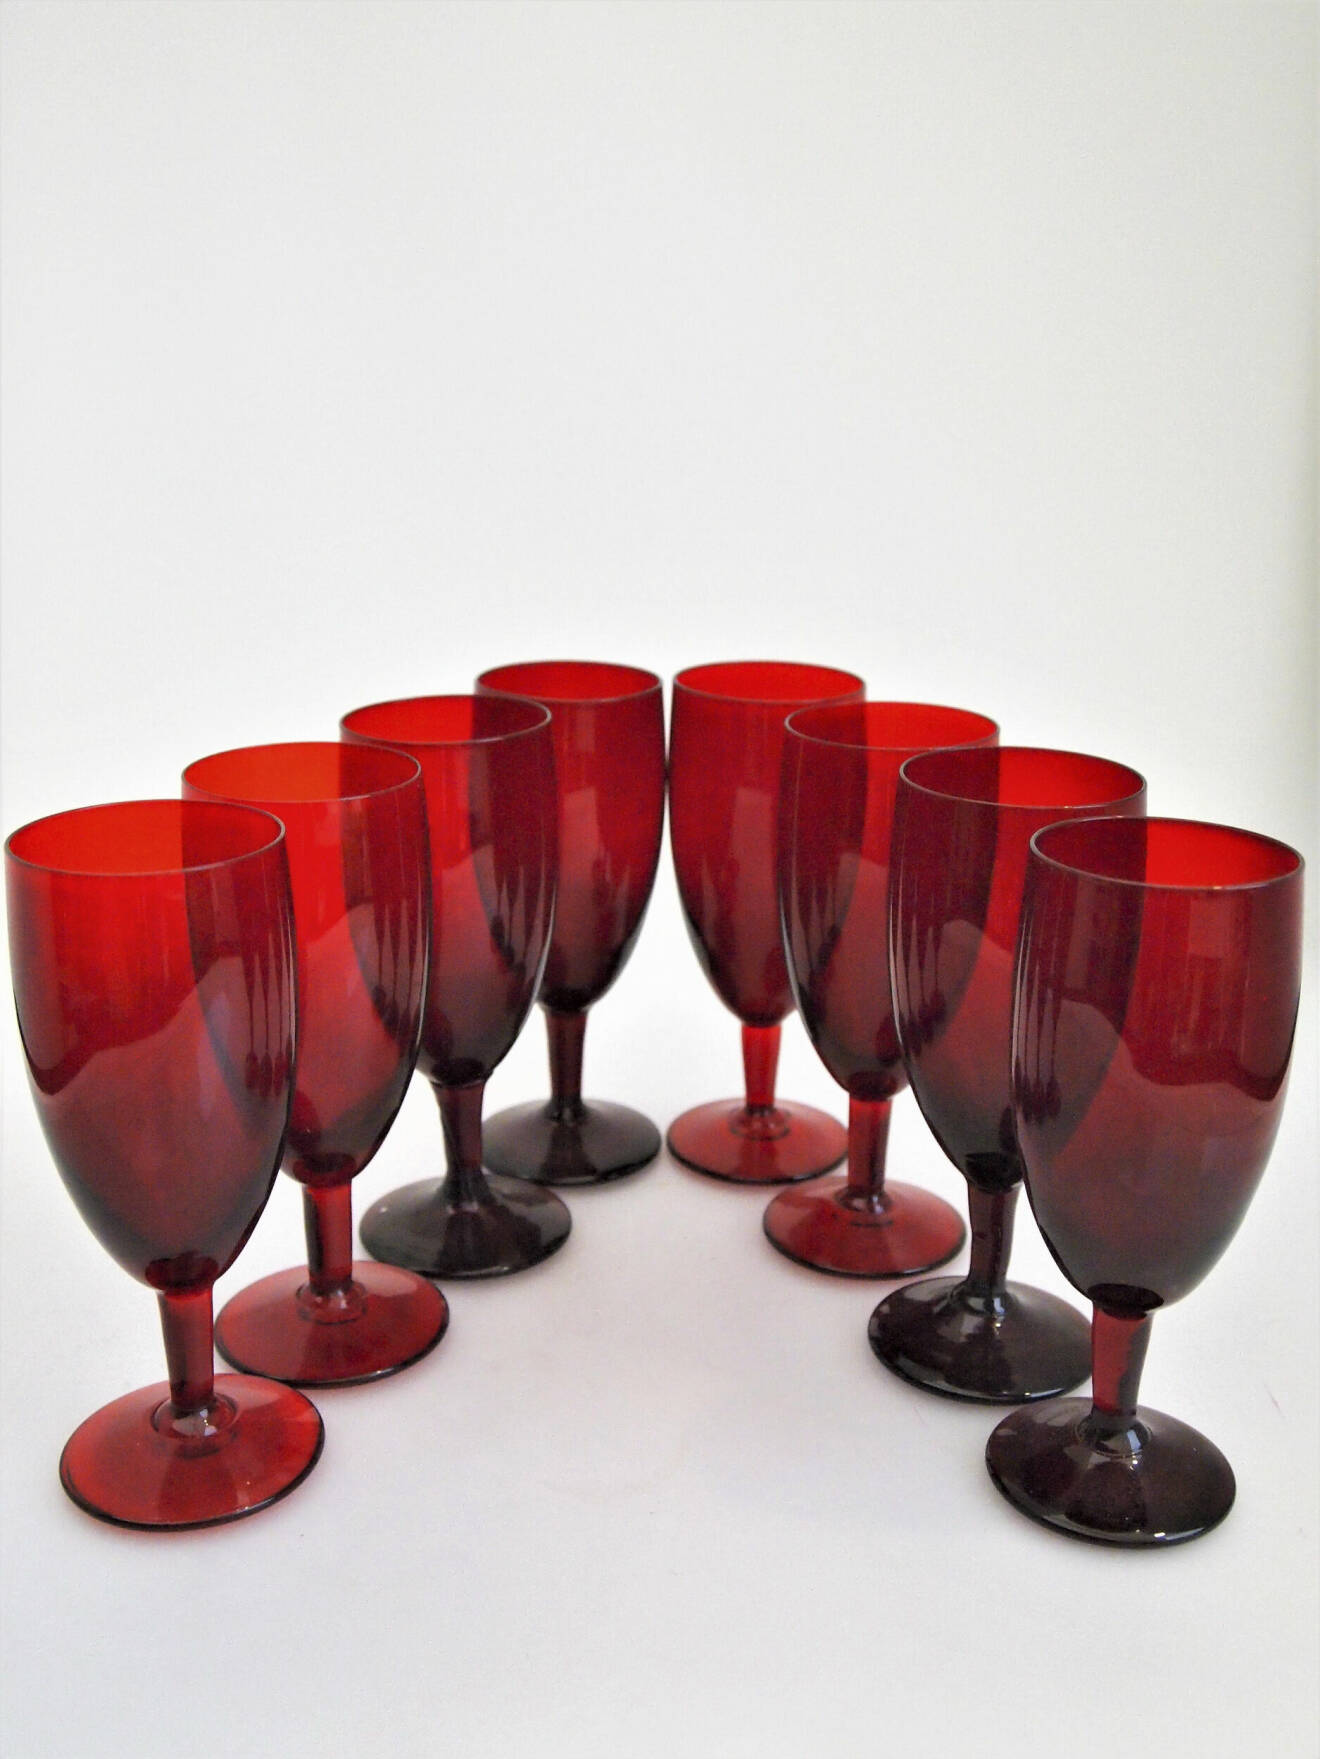 Monica Bratt började på Reijmyre glasbruk 1937 och blev kvar där i drygt 20år. Hon byggde upp en helt egen kollektion och gjorde stora insatser för bruket. De rubinröda glasen är bland hennes mest kända skapelser. Höjden är 15cm. 450kr för åtta glas på Lysekils Auktionsbyrå.